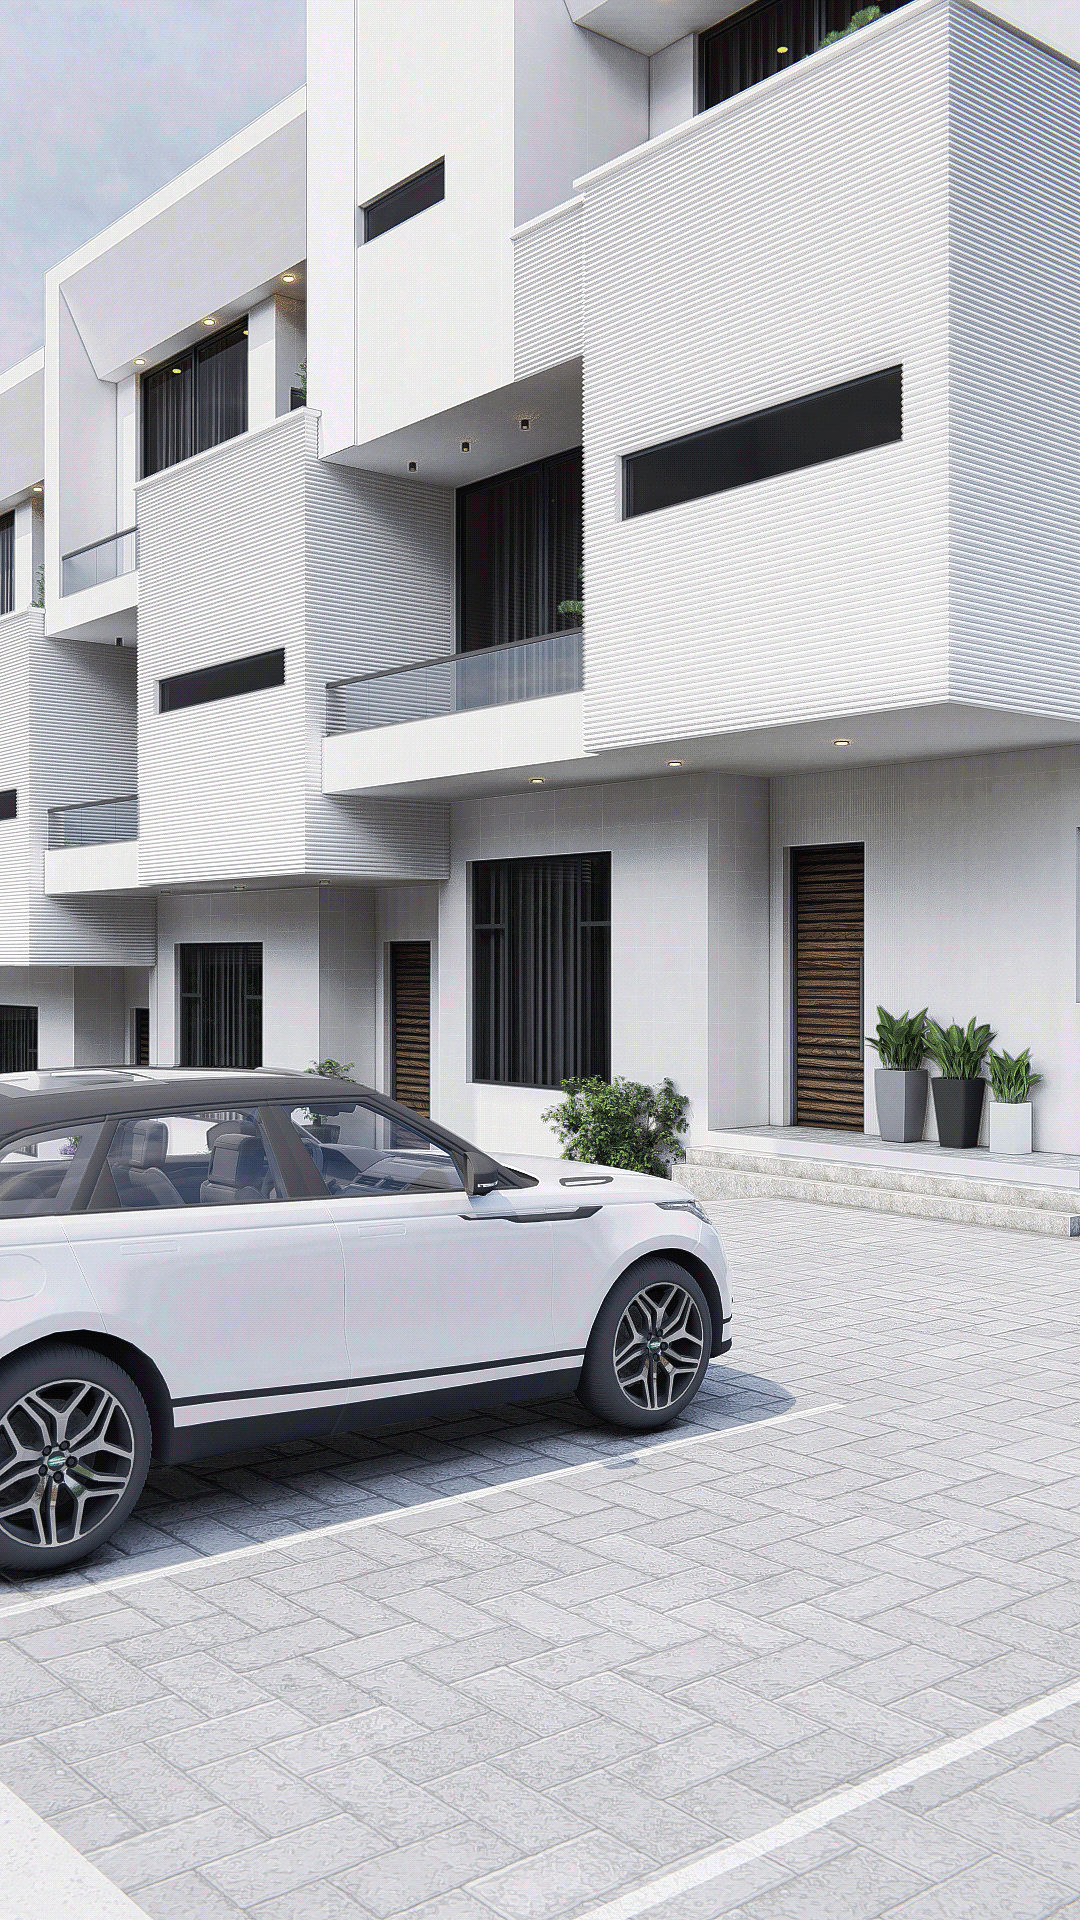 residential architecture ArcViz Render visualization 3D modern minimalist